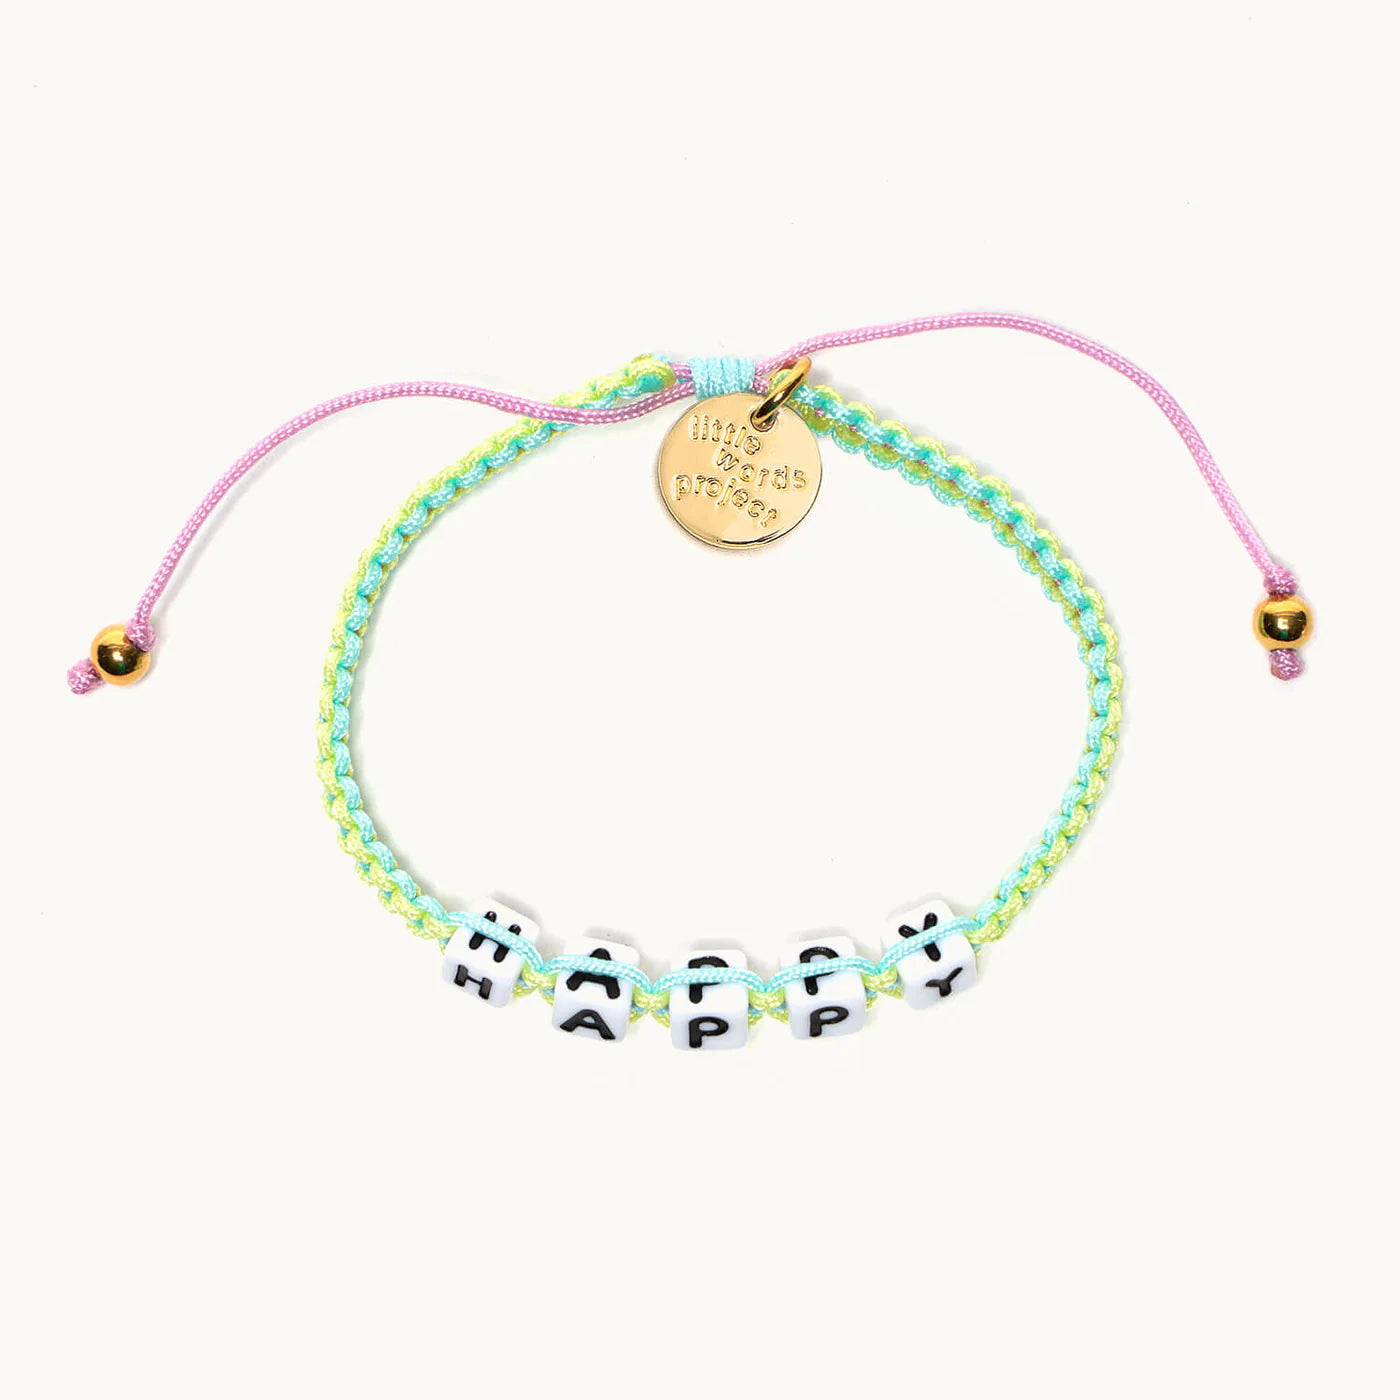 Happy / Little Words Project Woven Bracelet